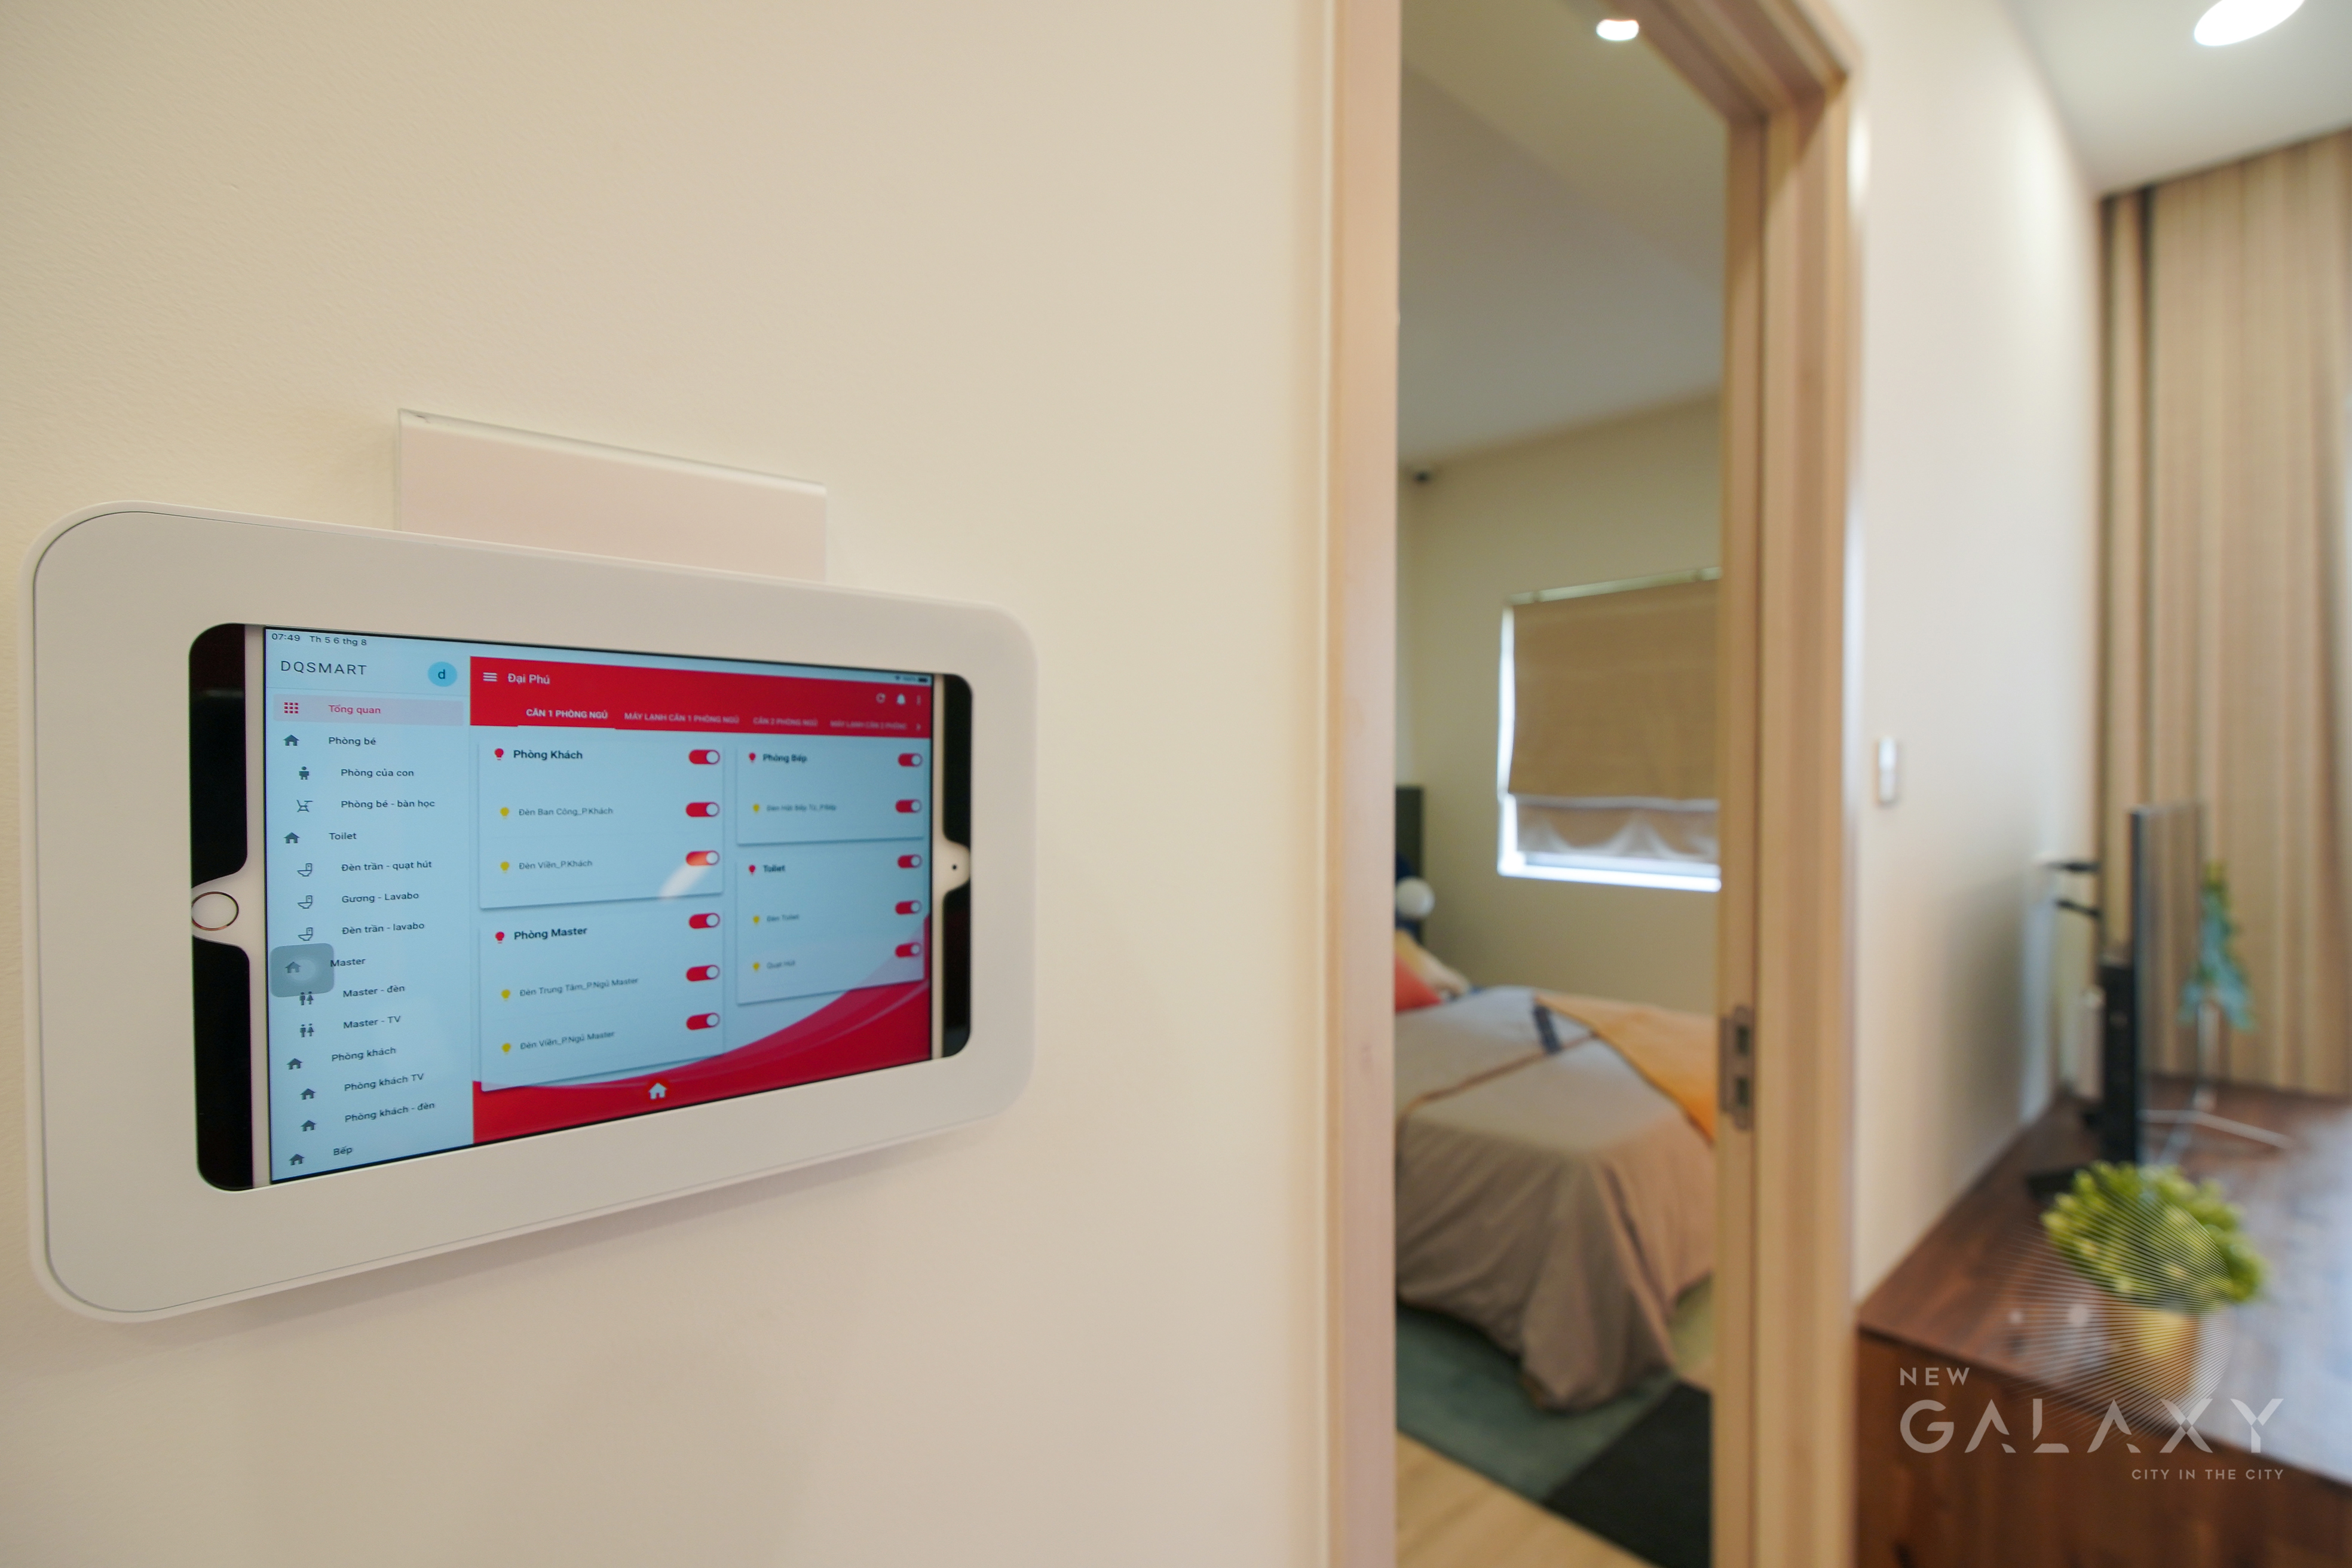 Công nghệ nhà thông minh được tích hợp trong các căn hộ tại New Galaxy